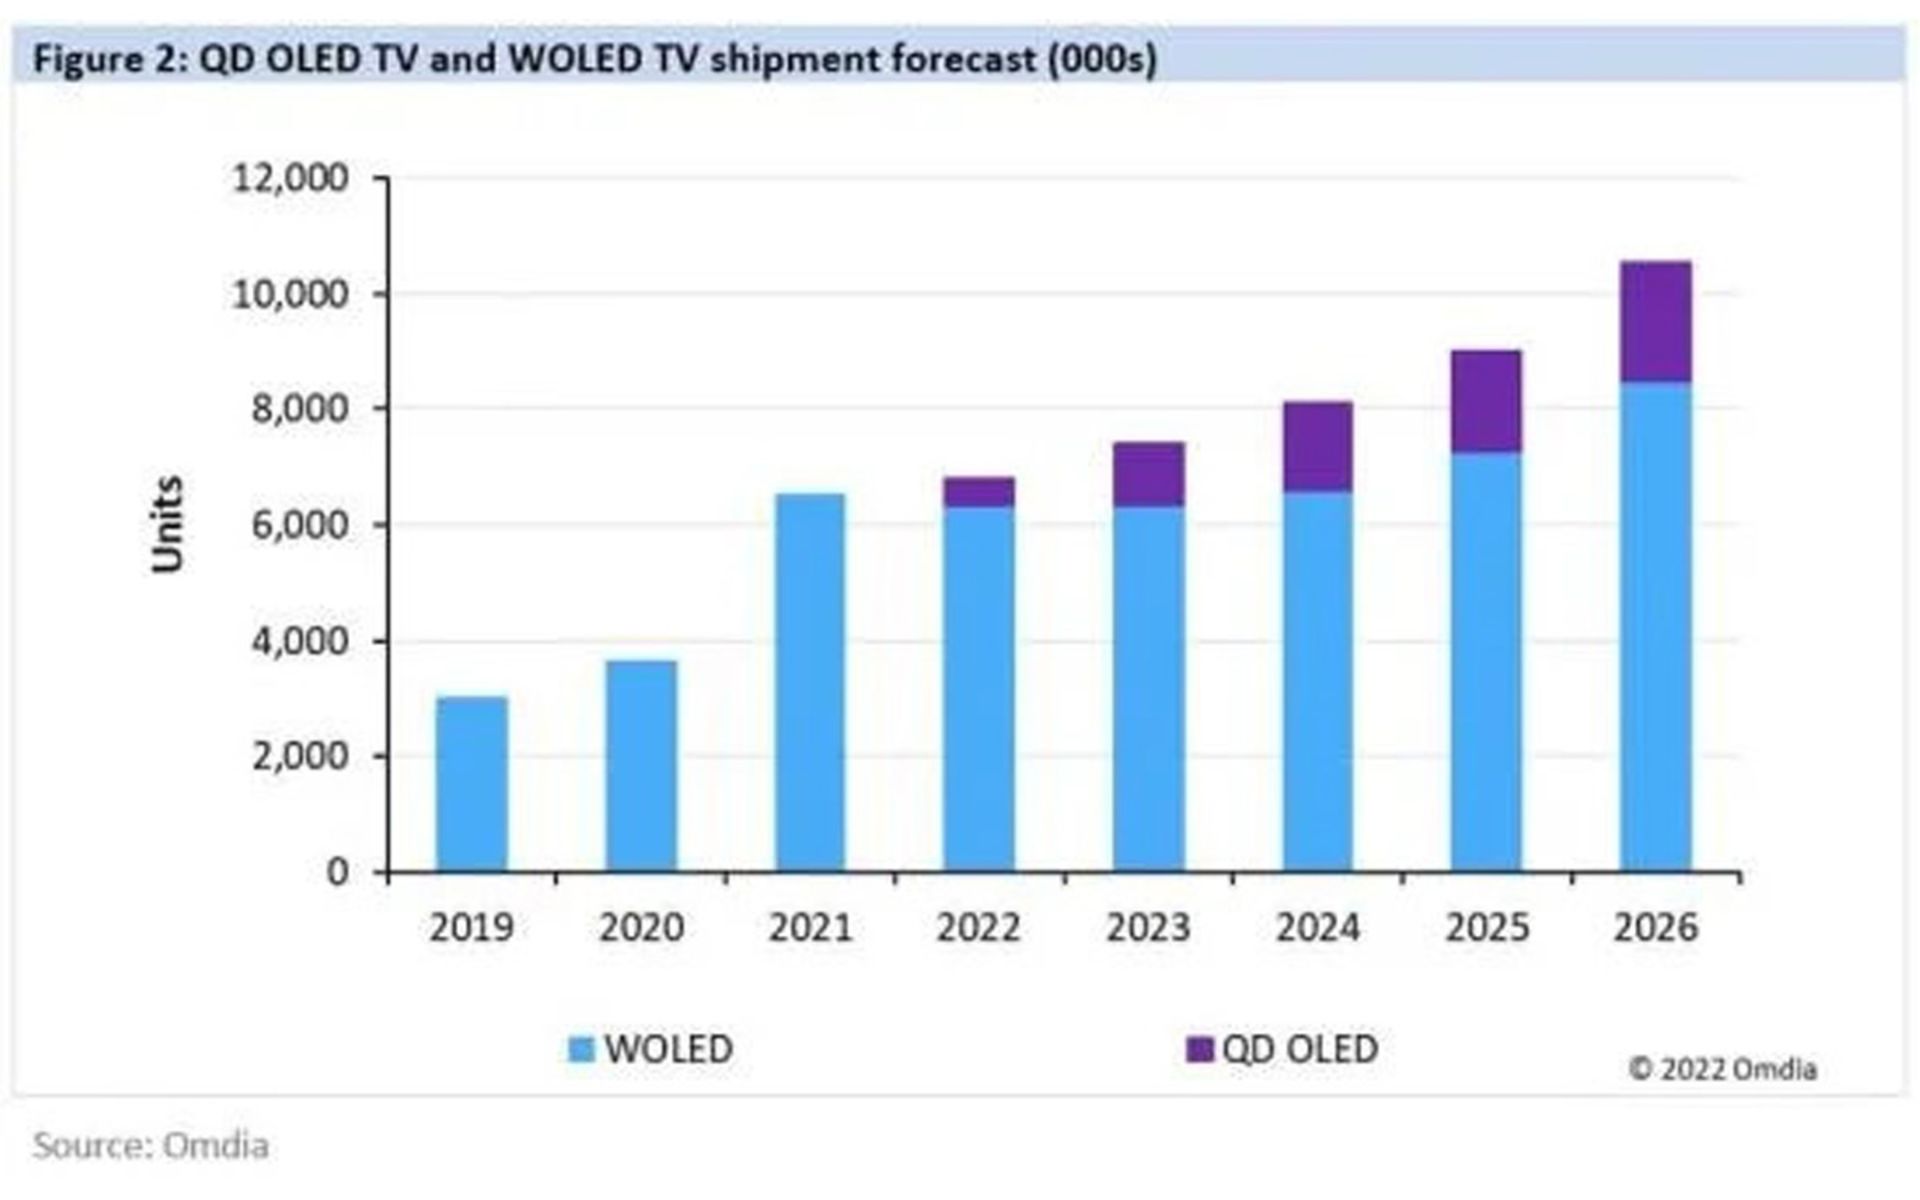 تخمین فروش تلویزیون OLED QD سامسونگ از ۲۰۲۲ تا ۲۰۲۶ در مقایسه با WOLED-TV ال‌جی